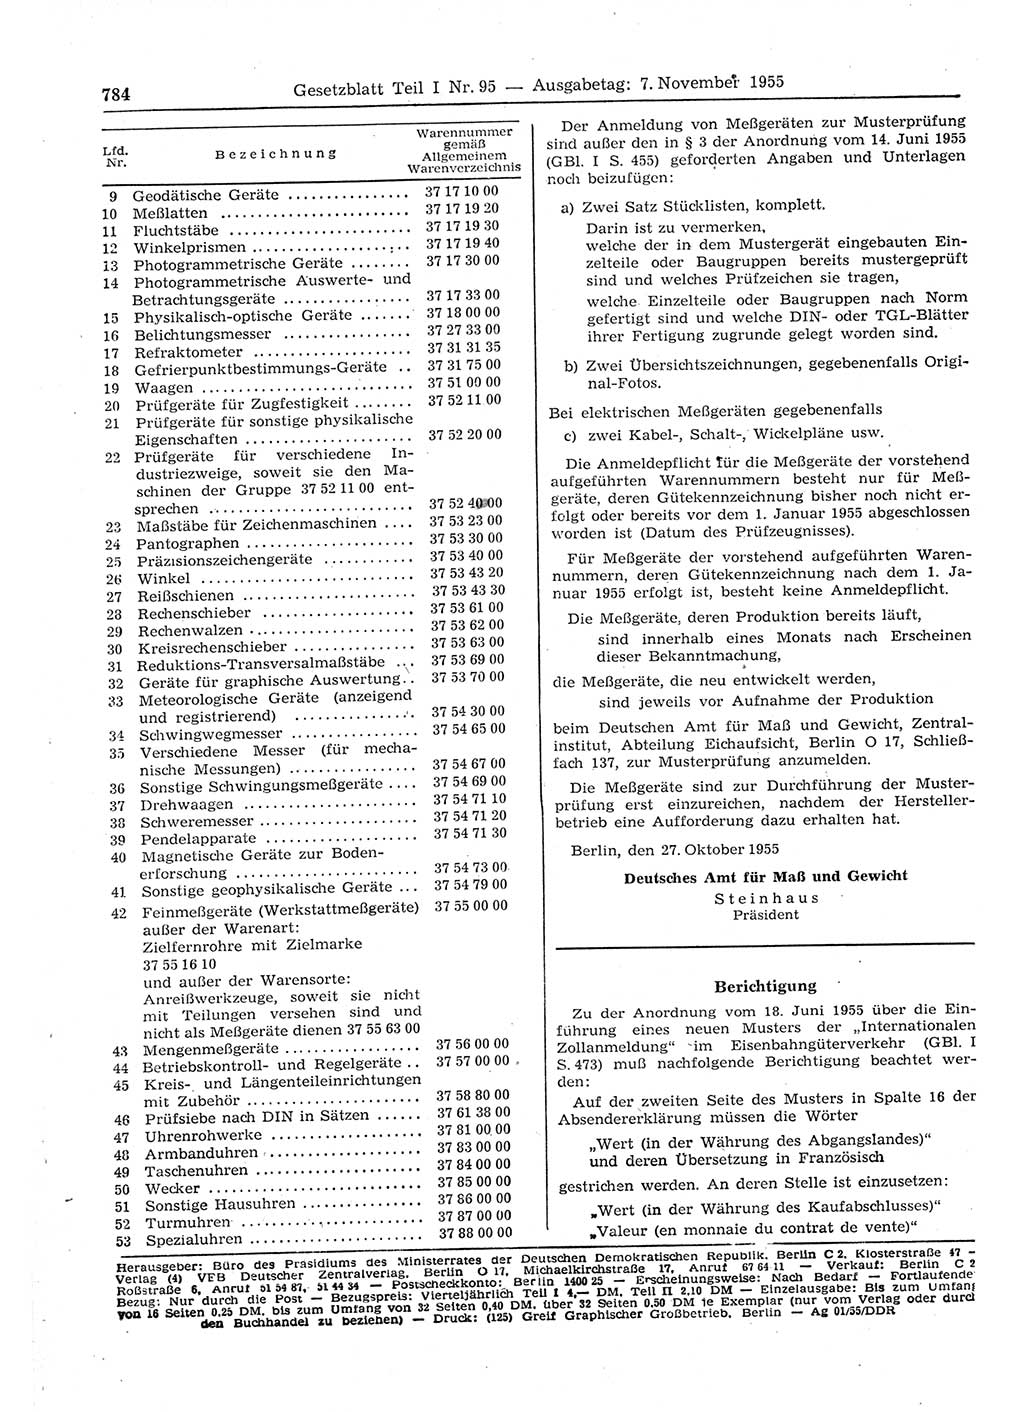 Gesetzblatt (GBl.) der Deutschen Demokratischen Republik (DDR) Teil Ⅰ 1955, Seite 784 (GBl. DDR Ⅰ 1955, S. 784)